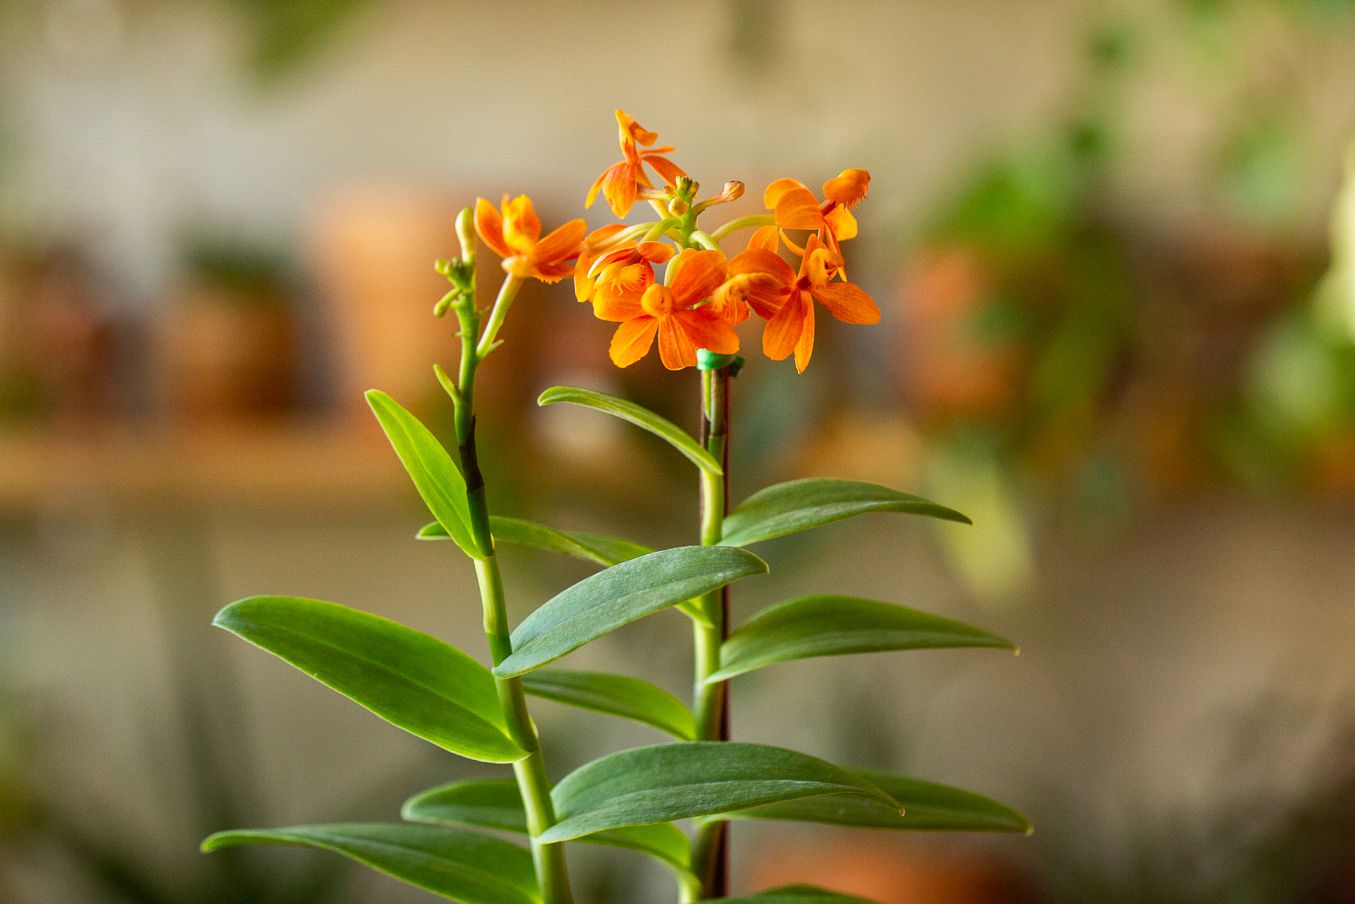 Epidendrum-Orchideen mit zwei Stielen und kleinen orangen Blüten in Nahaufnahme